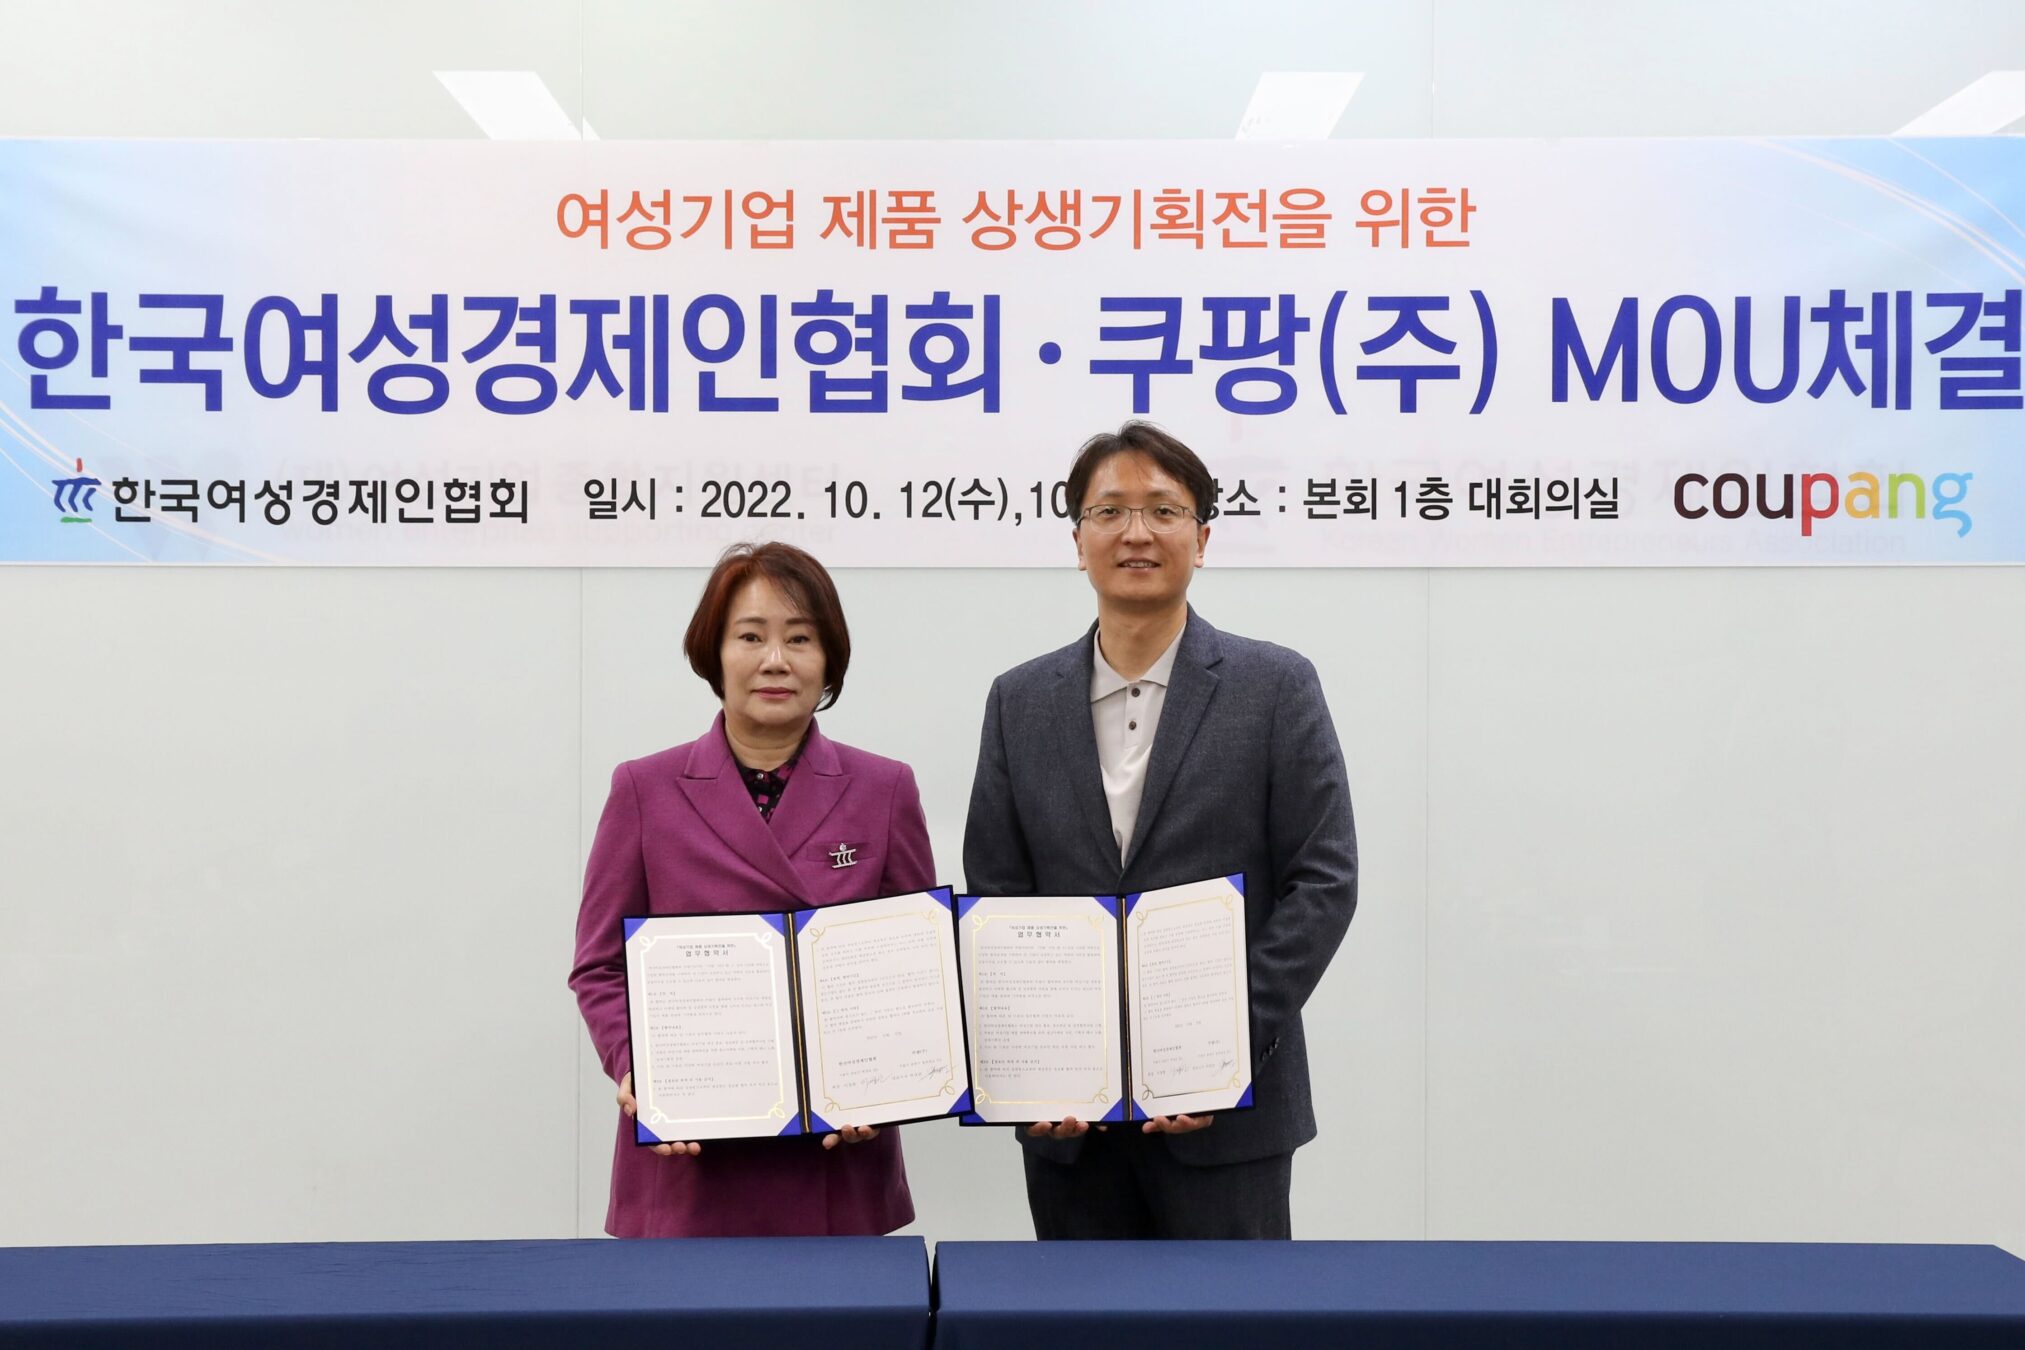 쿠팡이 여성기업을 지원하는 방법: 이정한 한국여성경제인협회 회장과 박대준 쿠팡 신사업 부문 대표